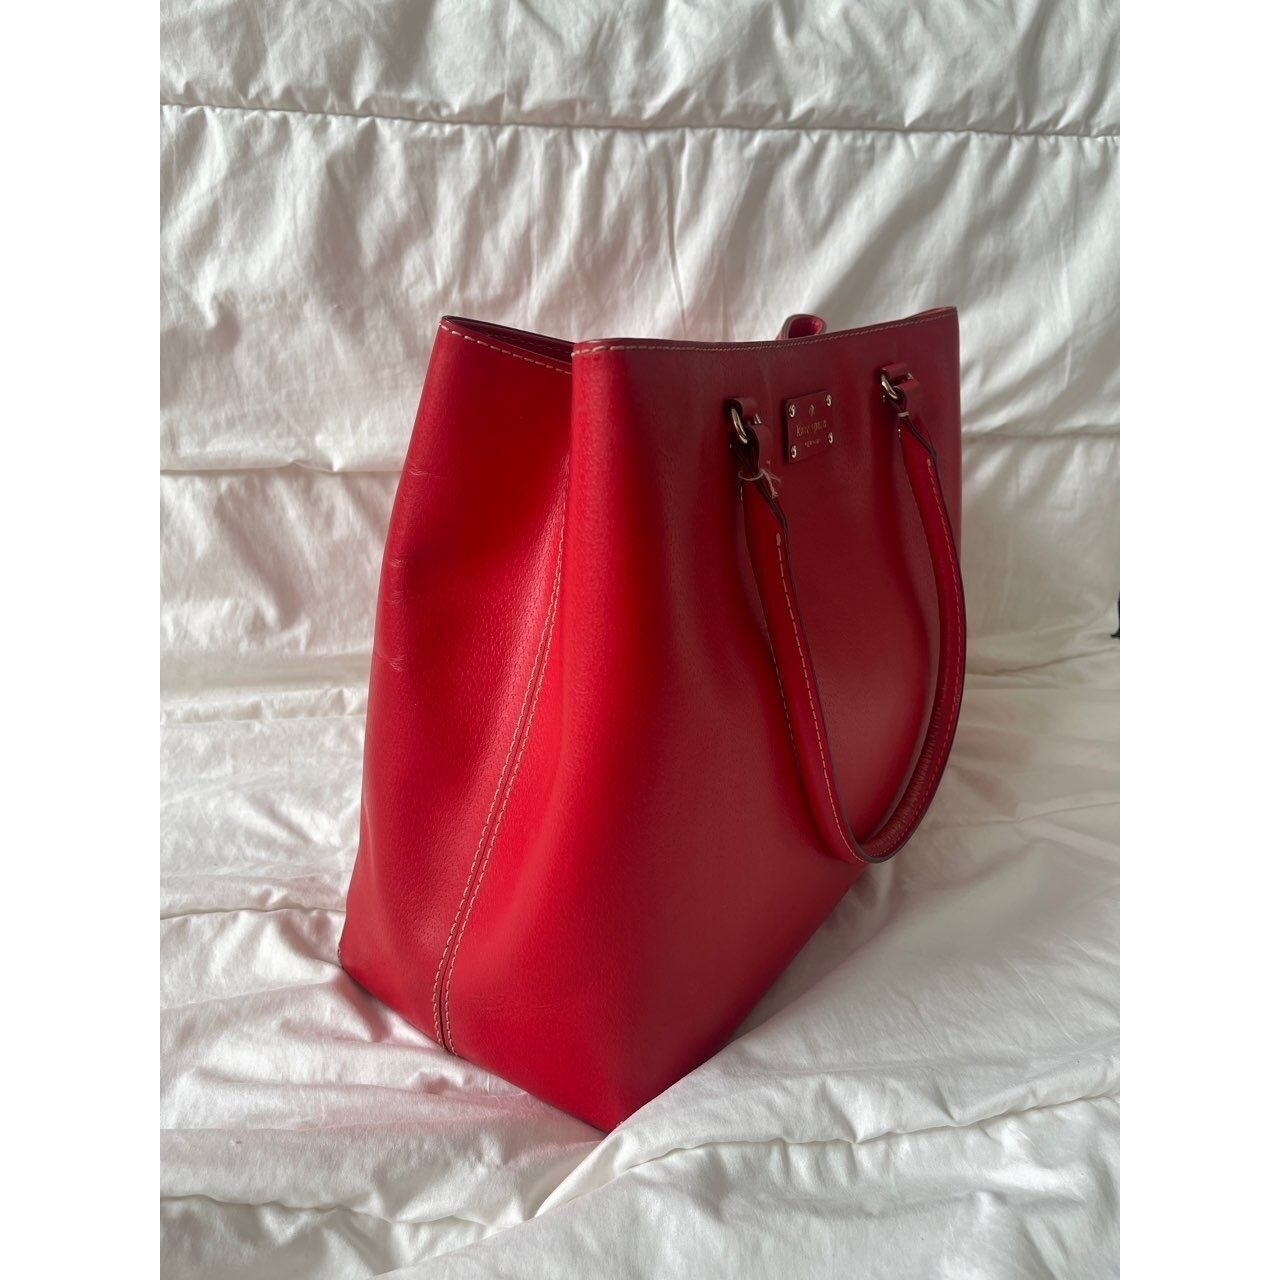 Kate Spade New York Red Tote Bag